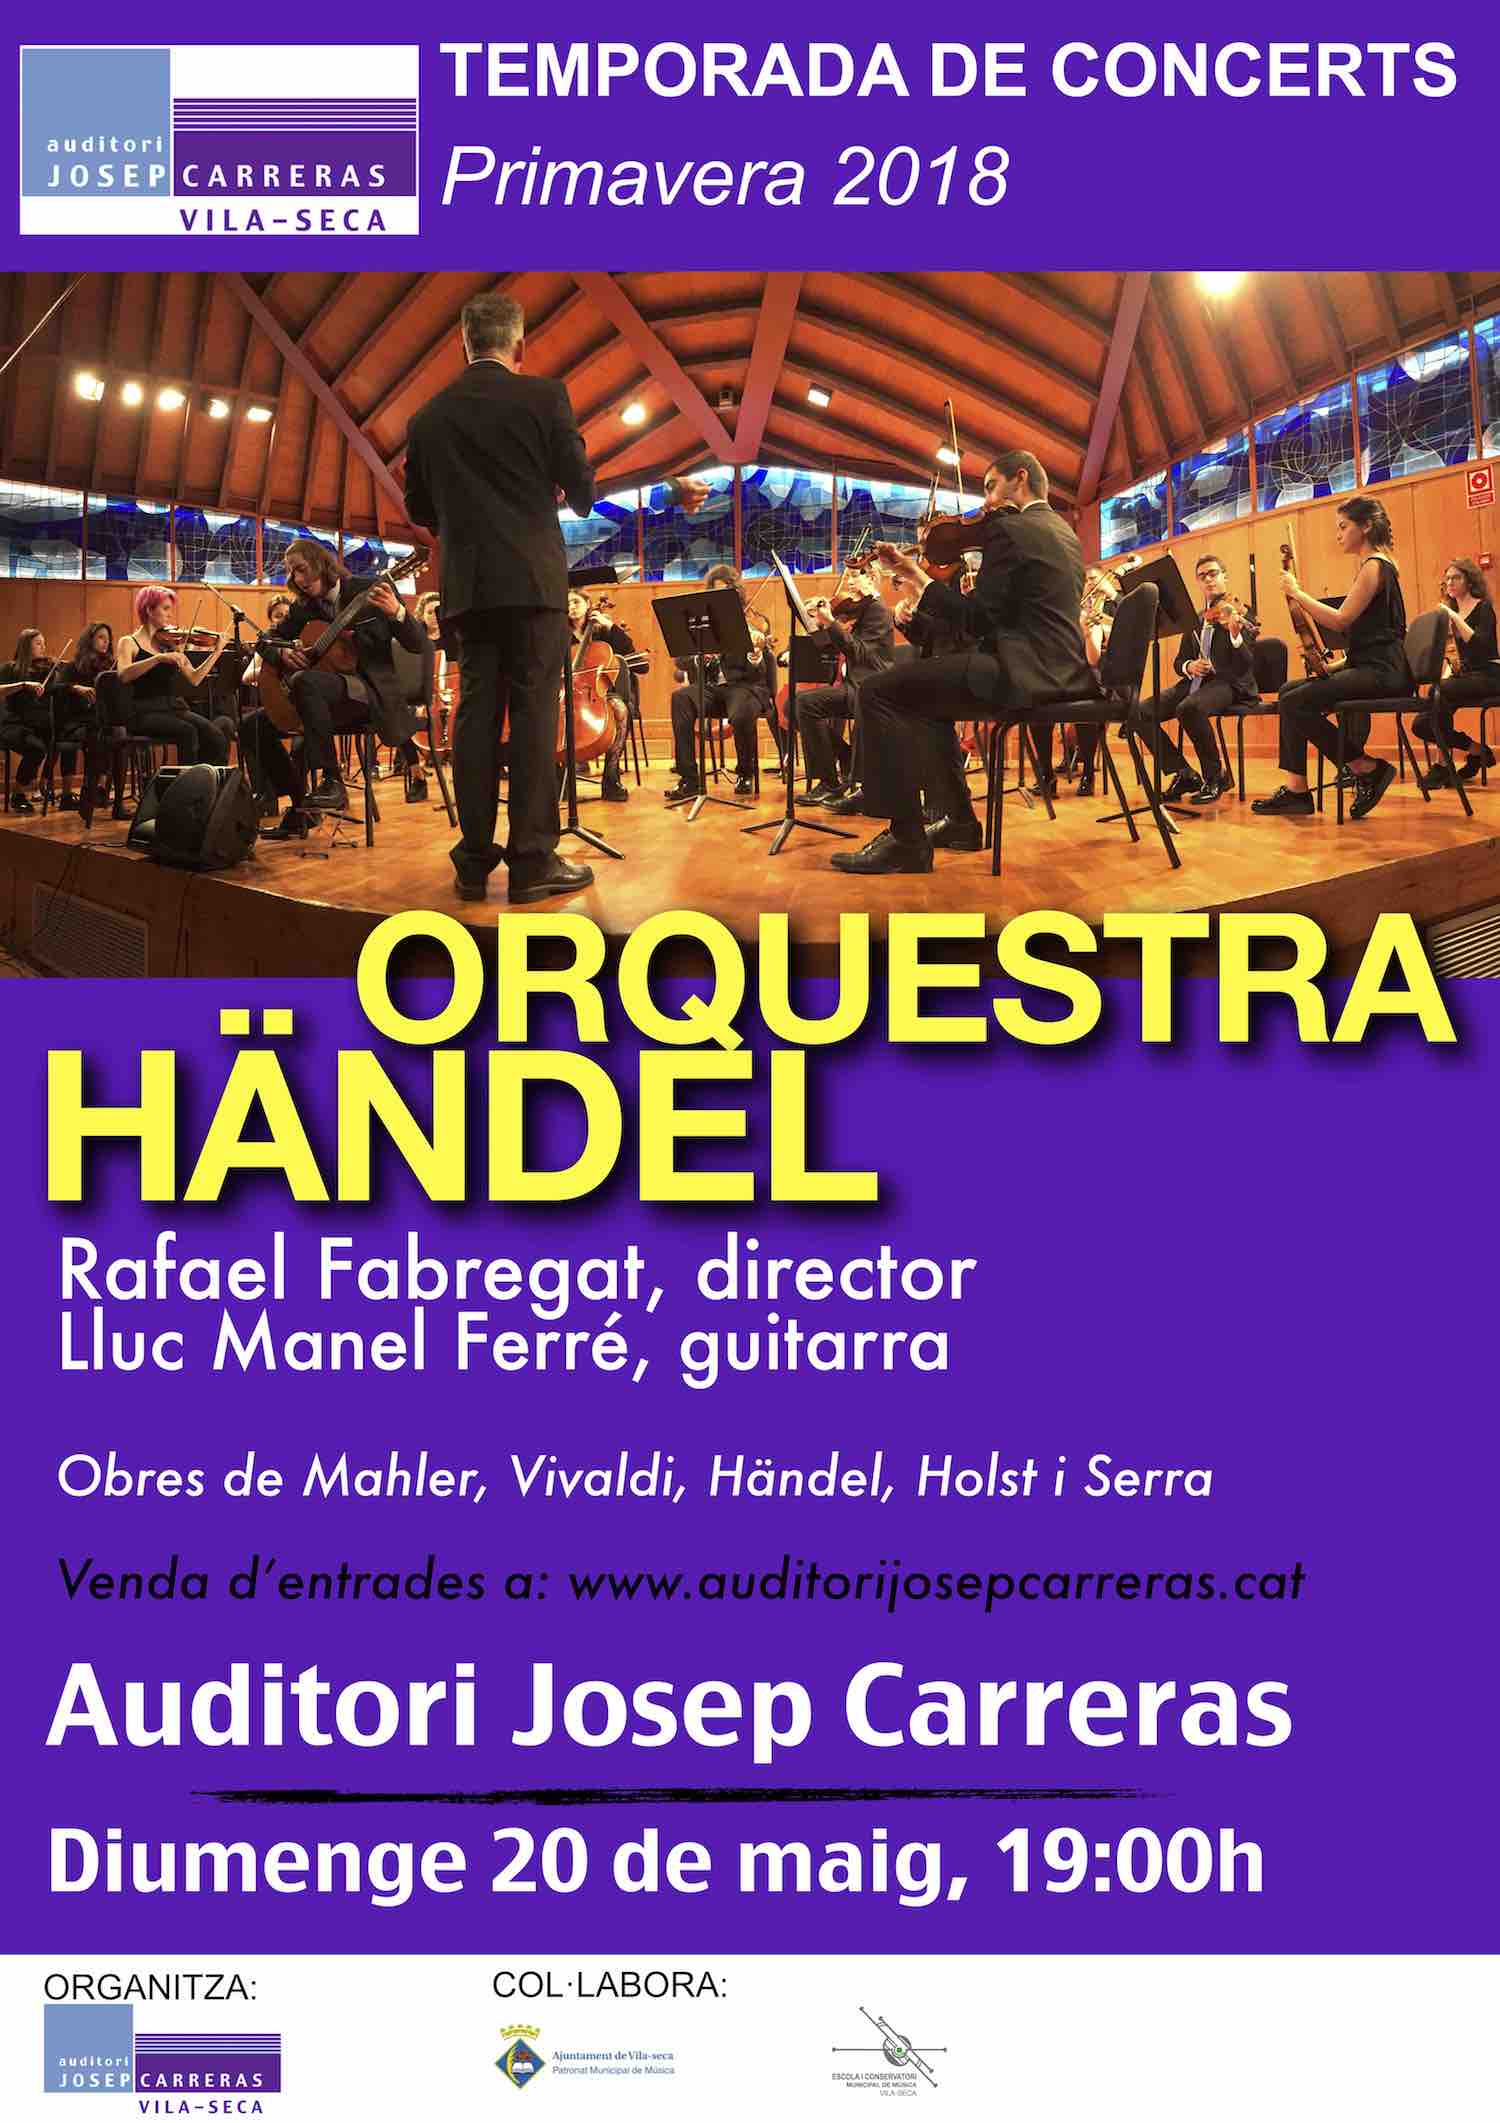 L'Orquestra Händel a la Temporada de concerts de l'Auditori Josep Carreras